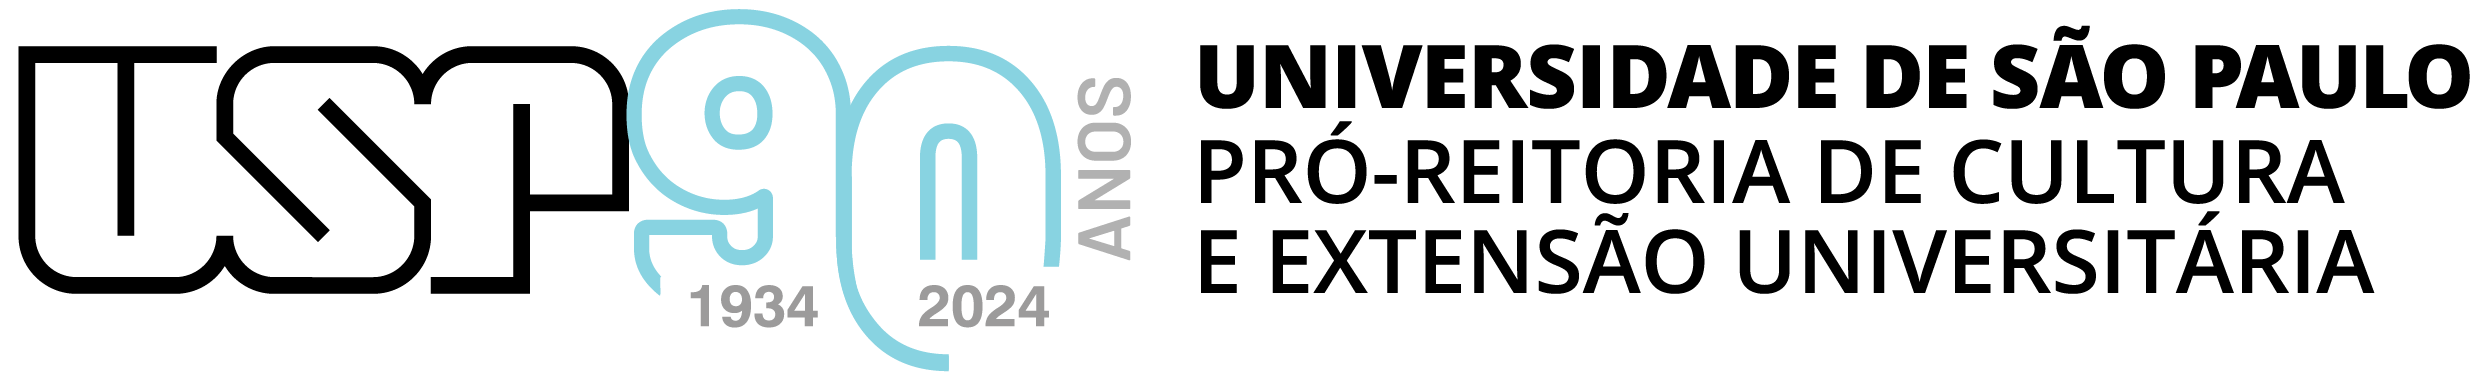 Marca da Pró-Reitoria de Cultura e Extensão Universitária